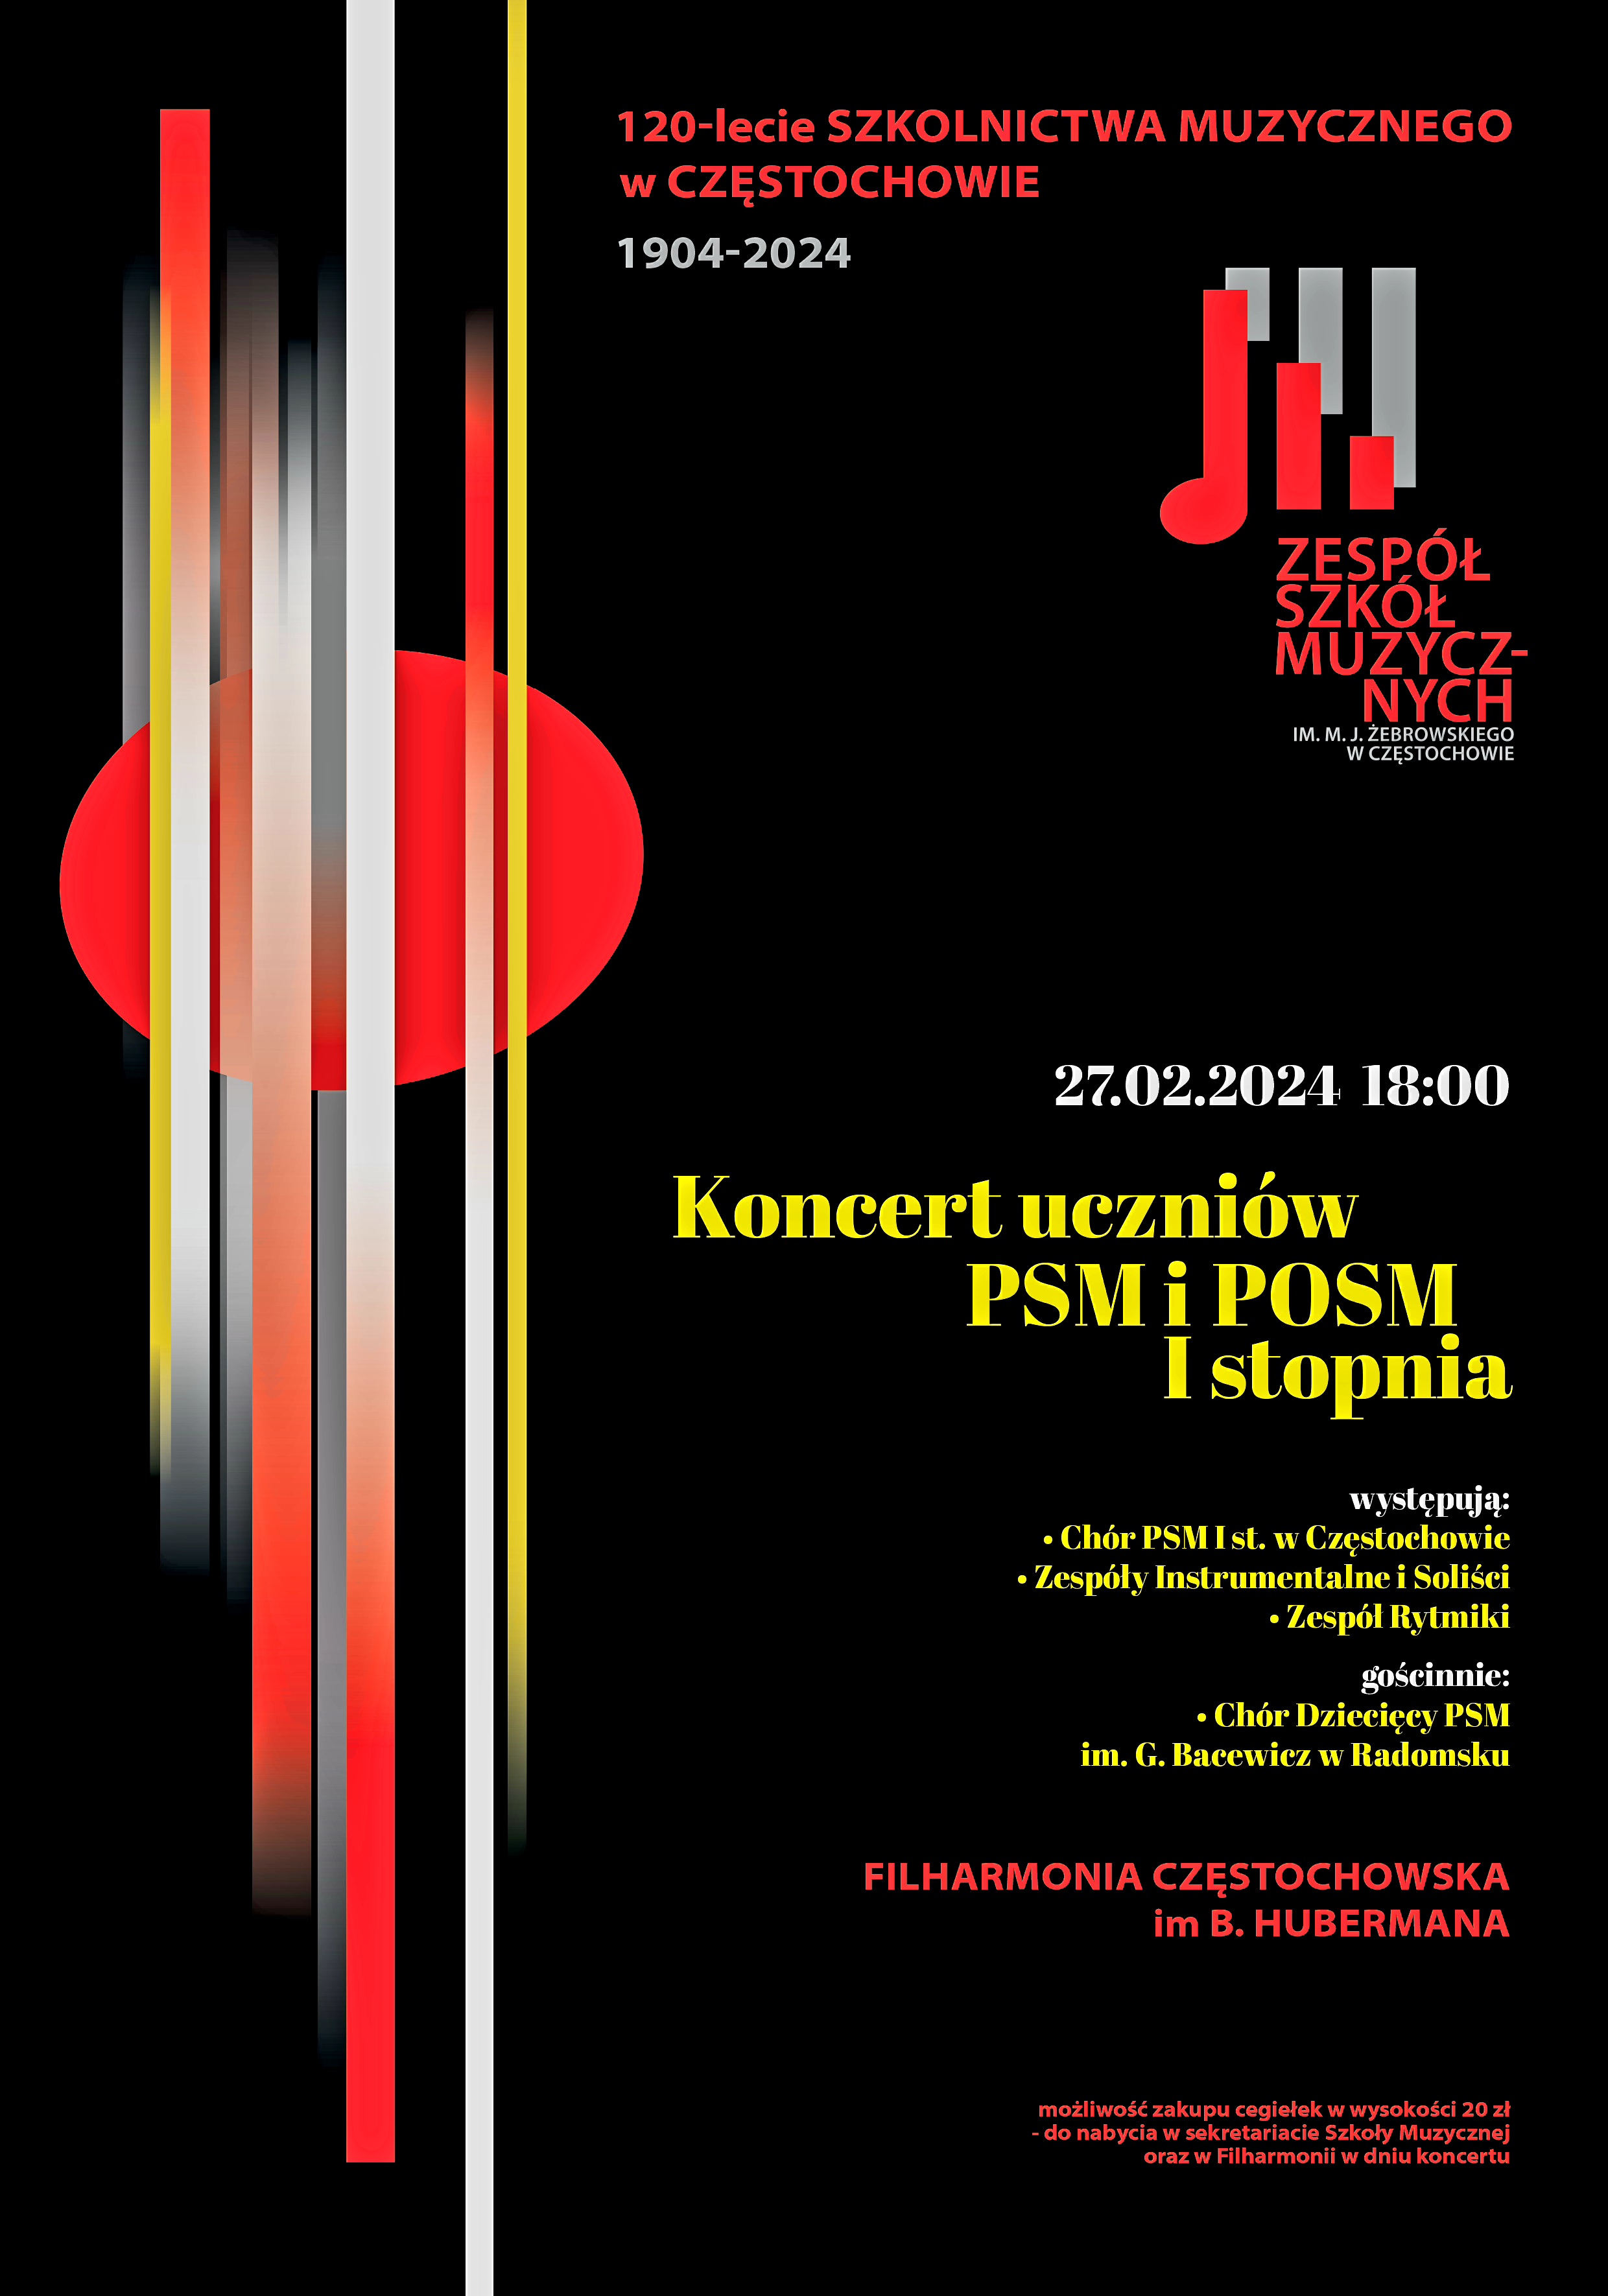 Czarne tło, po lewej kolorowe paski i koło, po prawej logo szkoły, napisy z informacją dotyczącą koncertu uczniów PSM i POSM I st. w Filharmonii